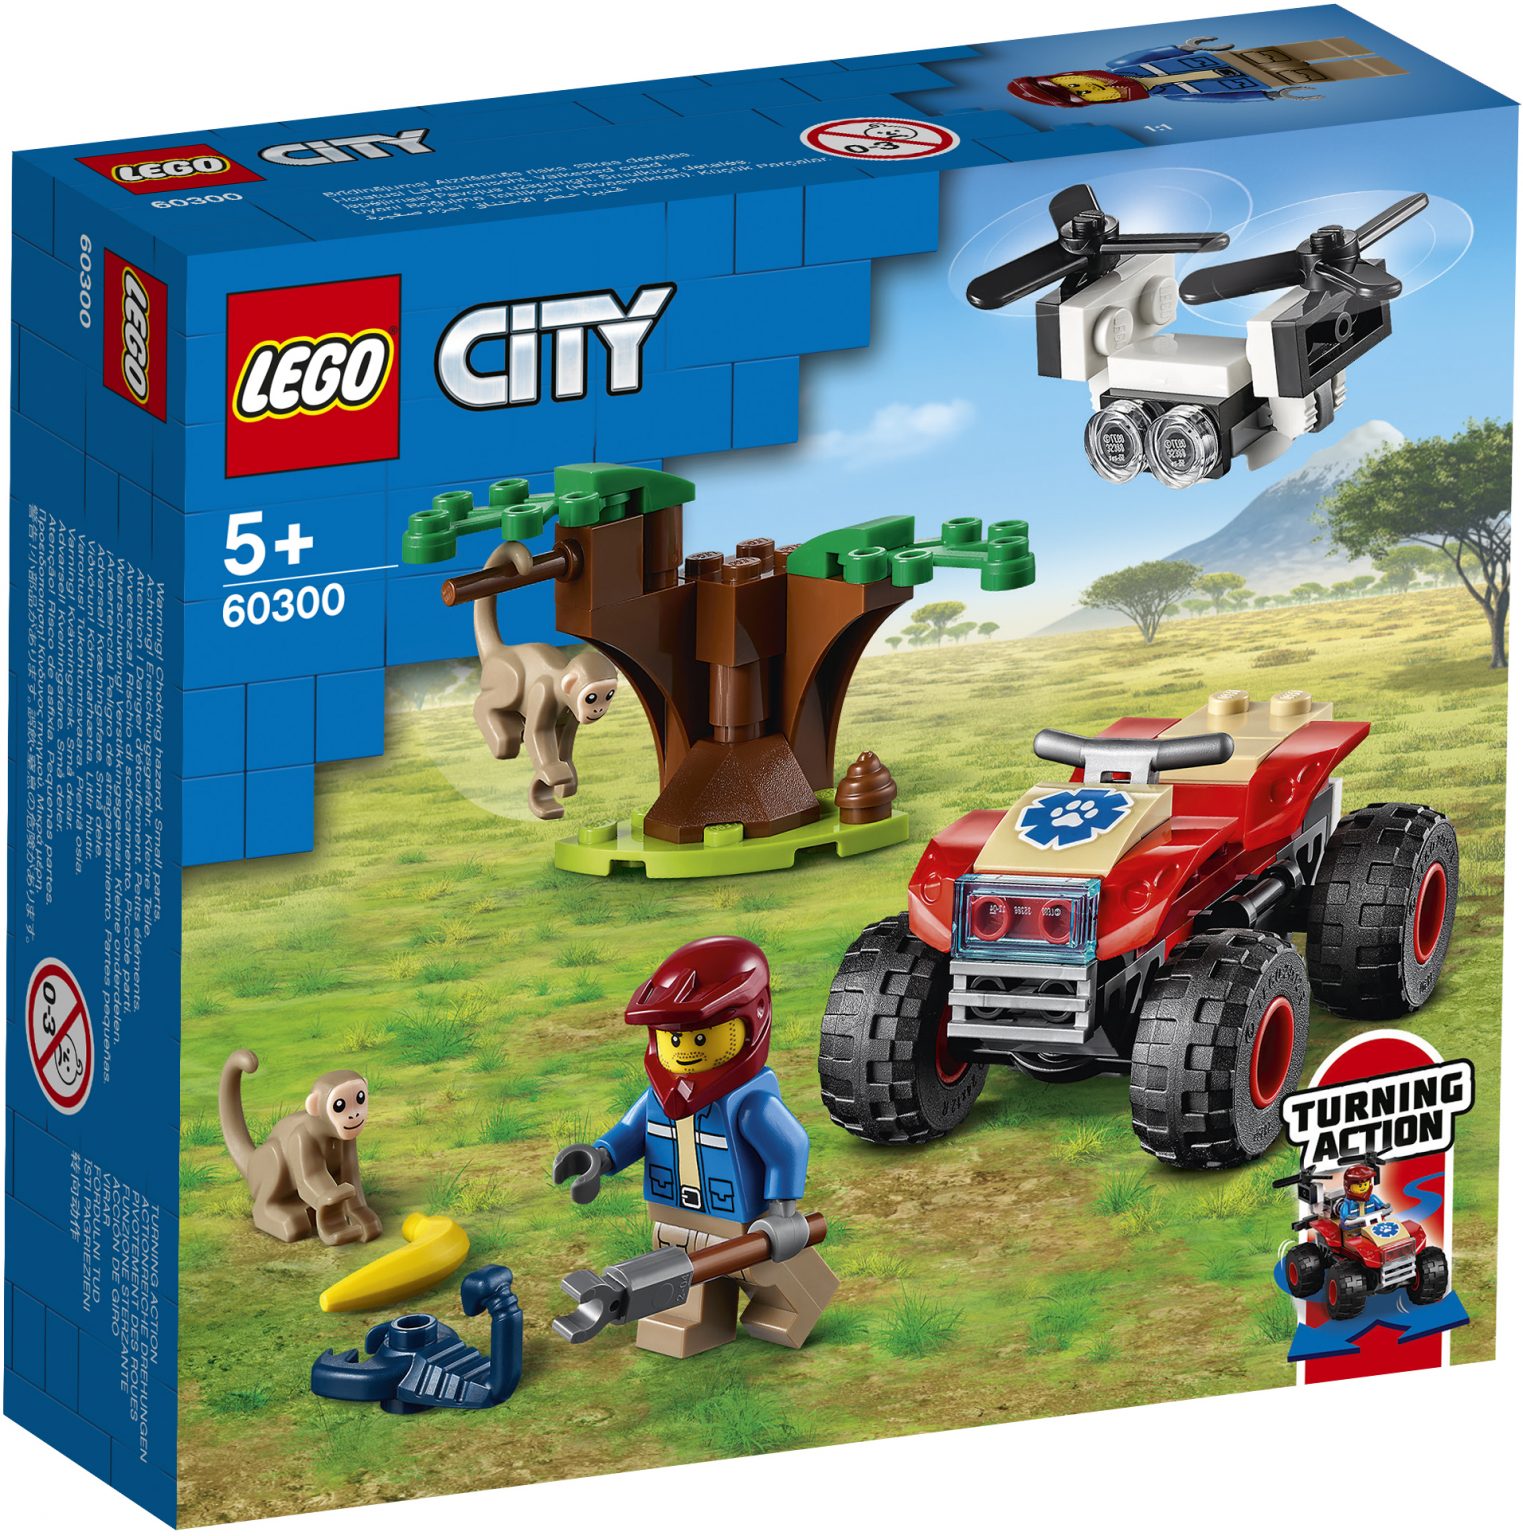 LEGO City Wildlife Summer 2021 Sets Revealed - The Brick Fan